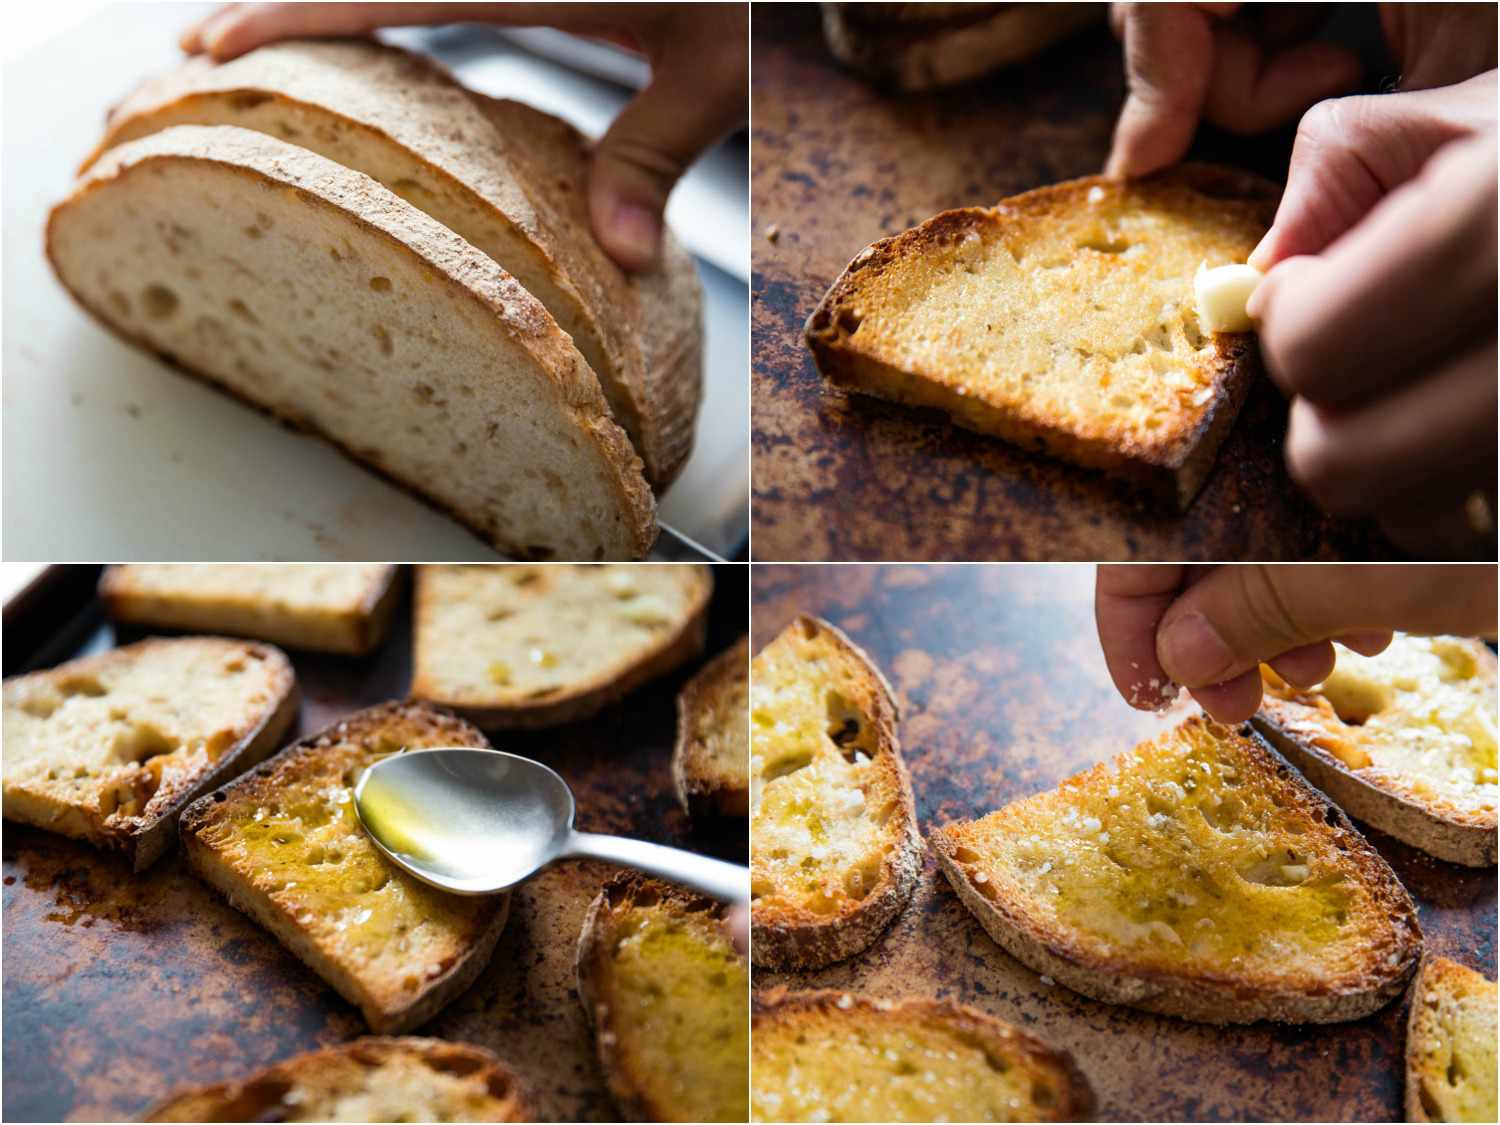 面包切片，烘烤，用蒜瓣摩擦，并淋上橄榄油和盐的拼贴画。gydF4y2Ba